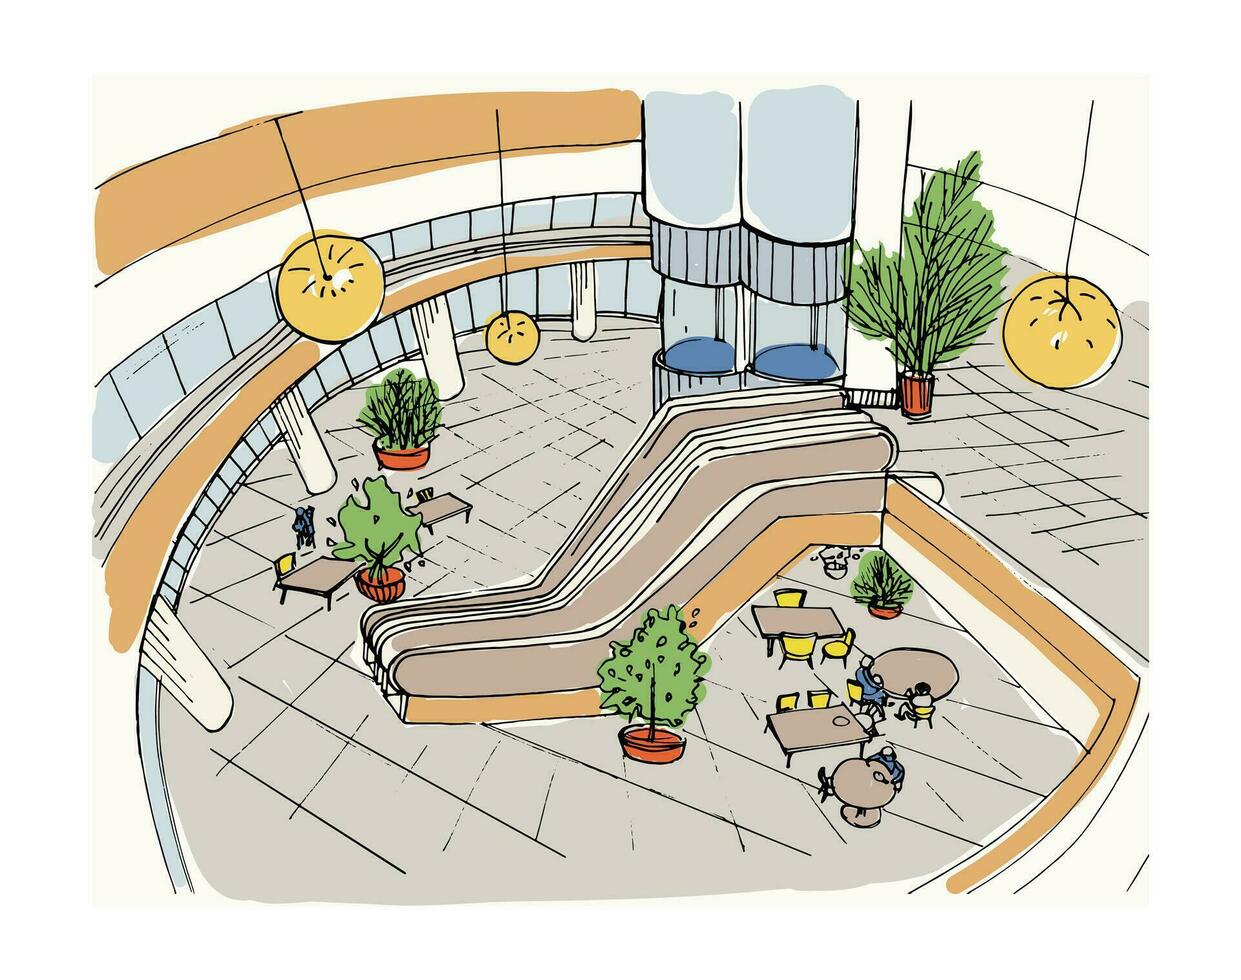 moderno interior compras centro, centro comercial. parte superior vista. vistoso bosquejo ilustración. vector